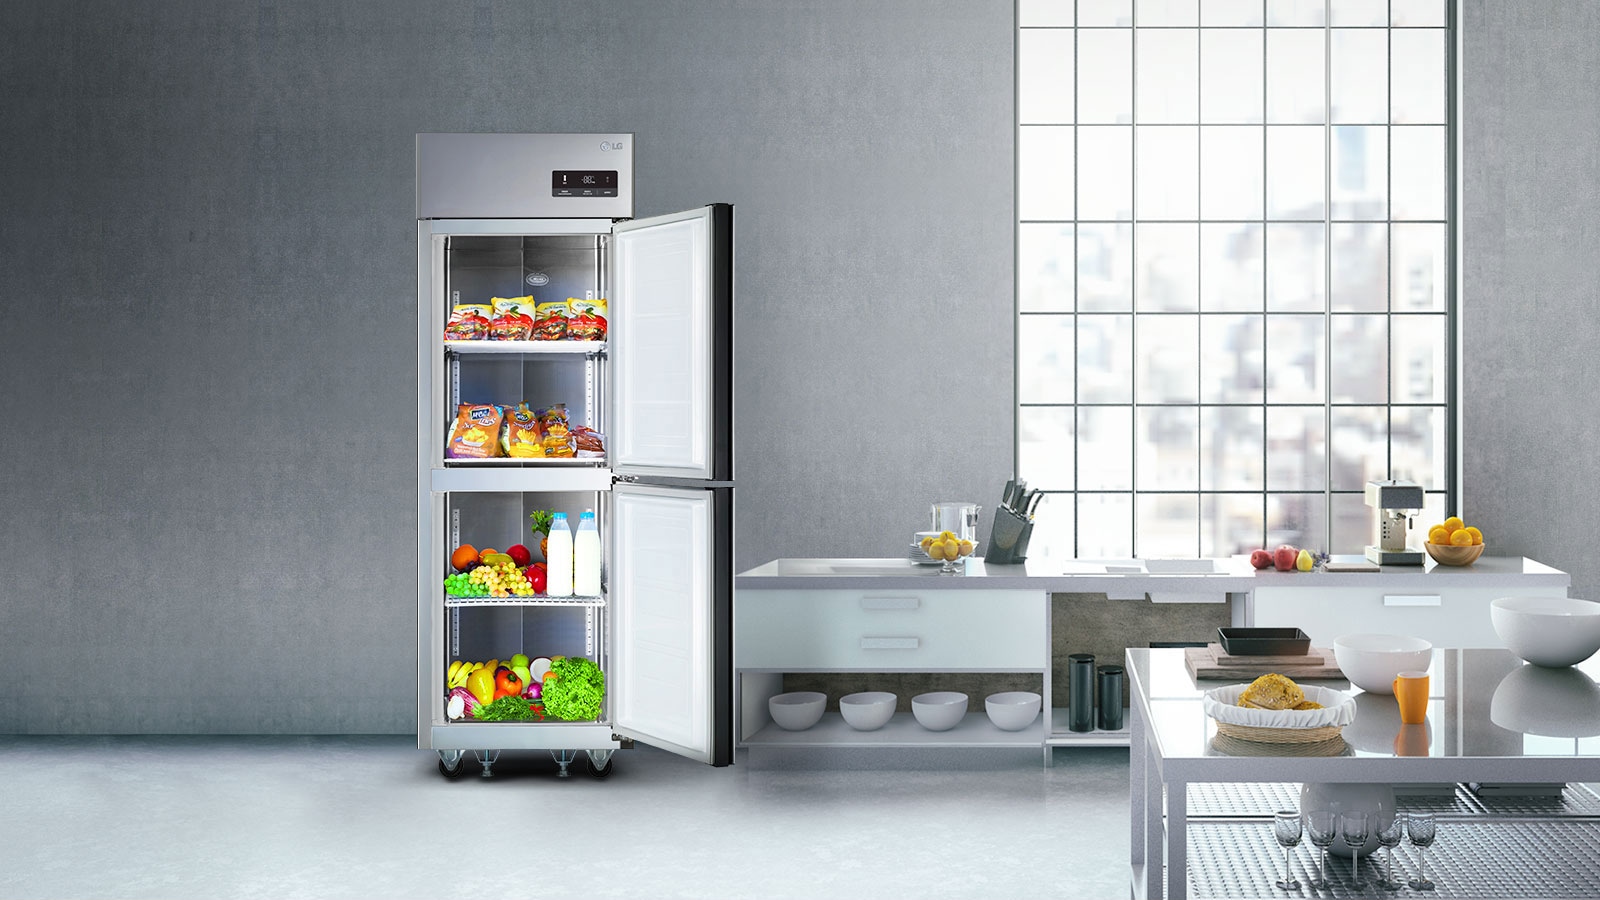 요식업의 성공을 부르는 LG 비지니스 냉장고1